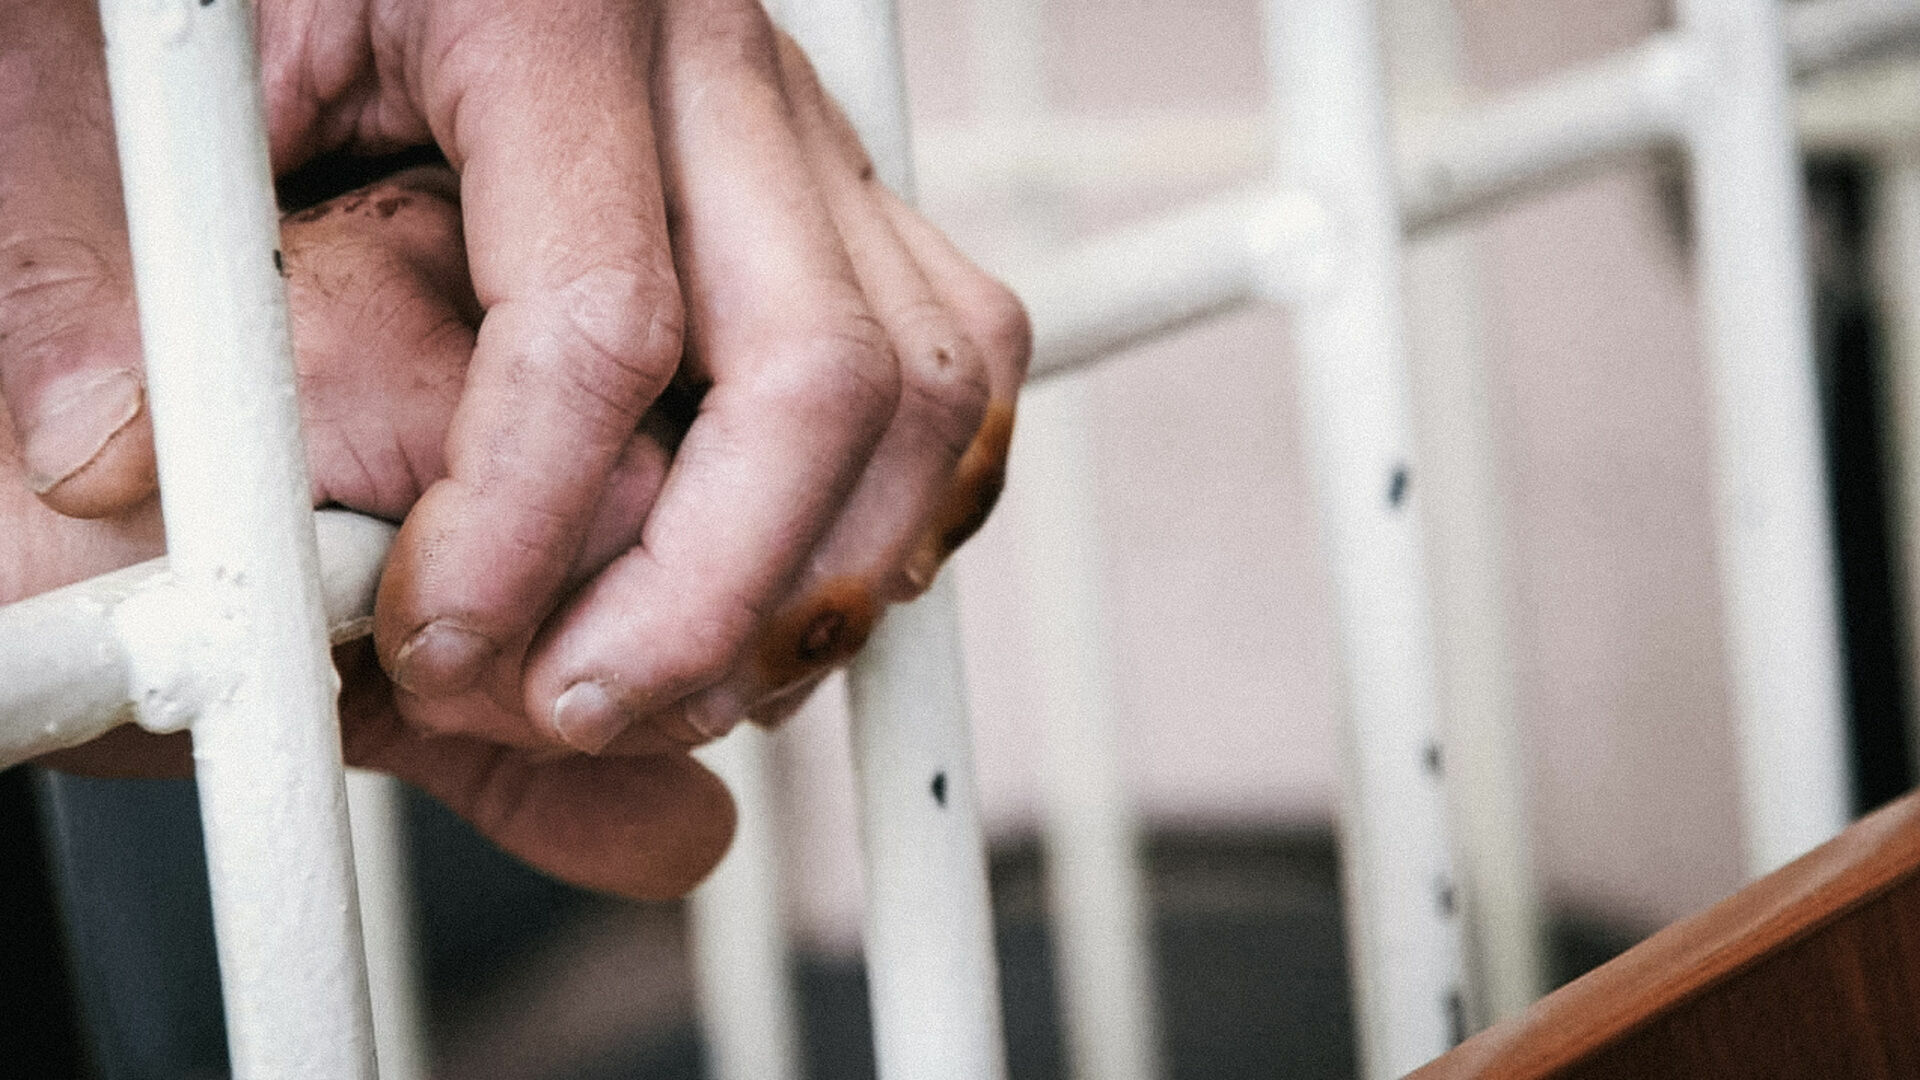 Четверо заключенных подали в суд на тюрьму в США за проведение над ними экспериментов